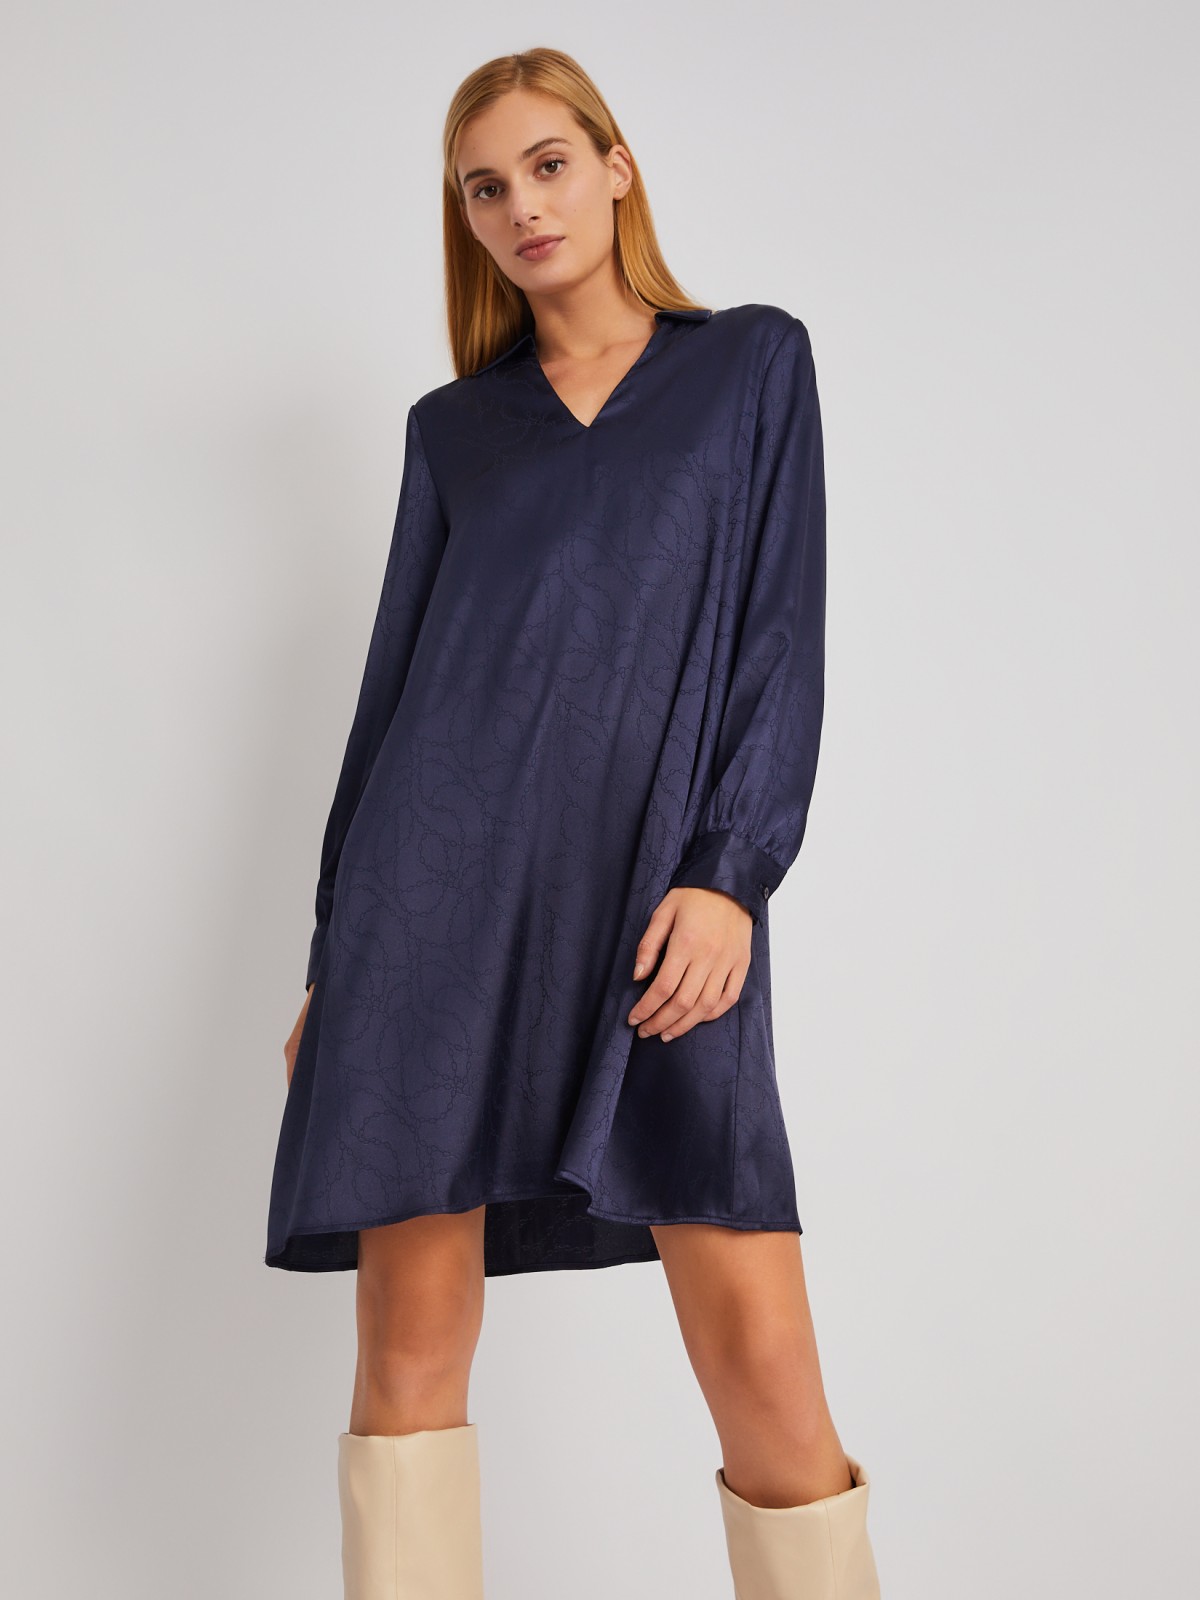 Атласное платье длины мини с воротником и акцентном на талии zolla 024118262193, цвет синий, размер XS